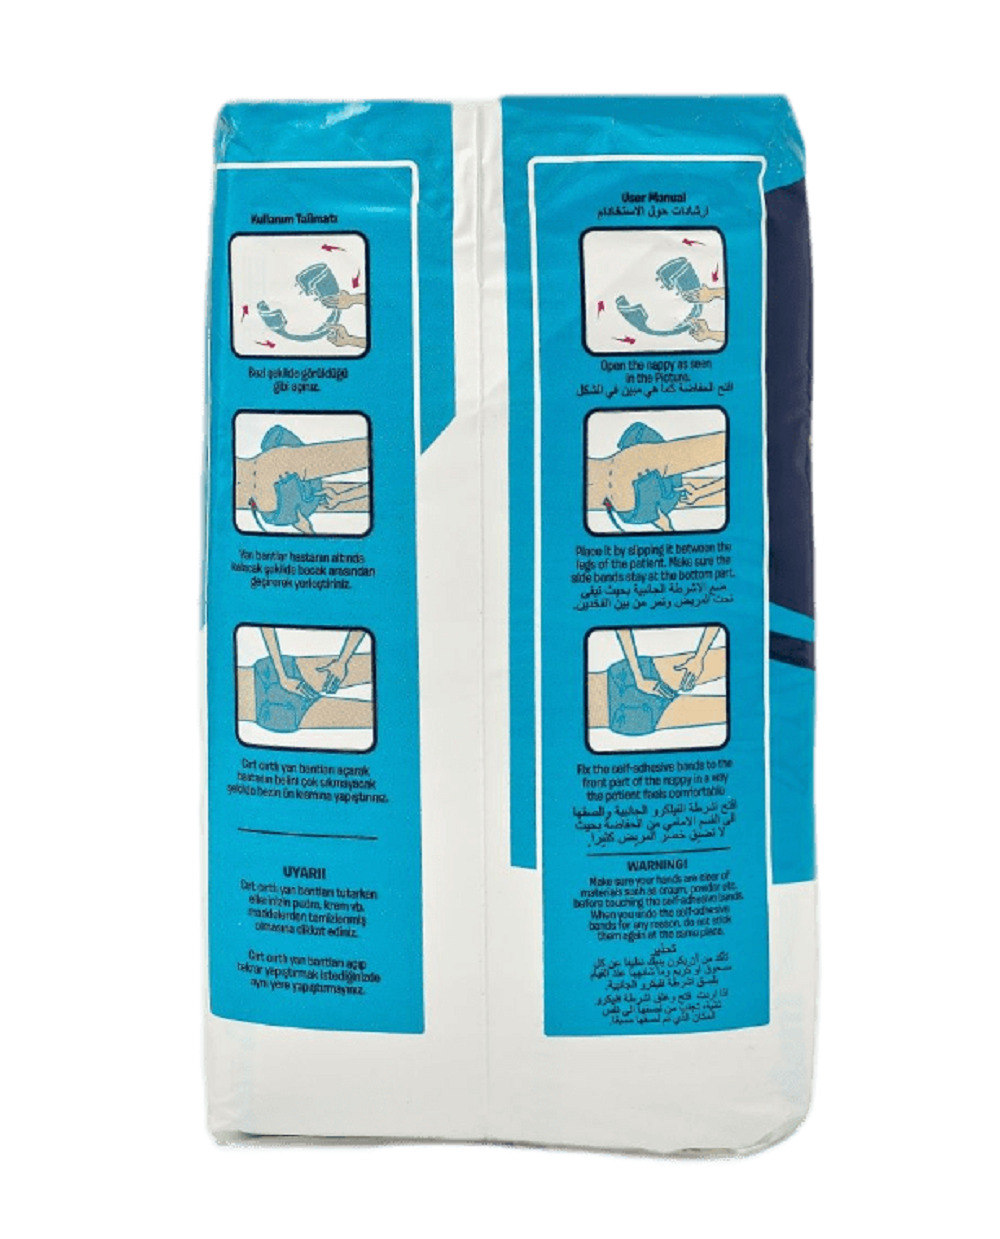 Подгузники для взрослых Onlem размер S (50-90cм.) 30 шт. в упаковке - фото 4